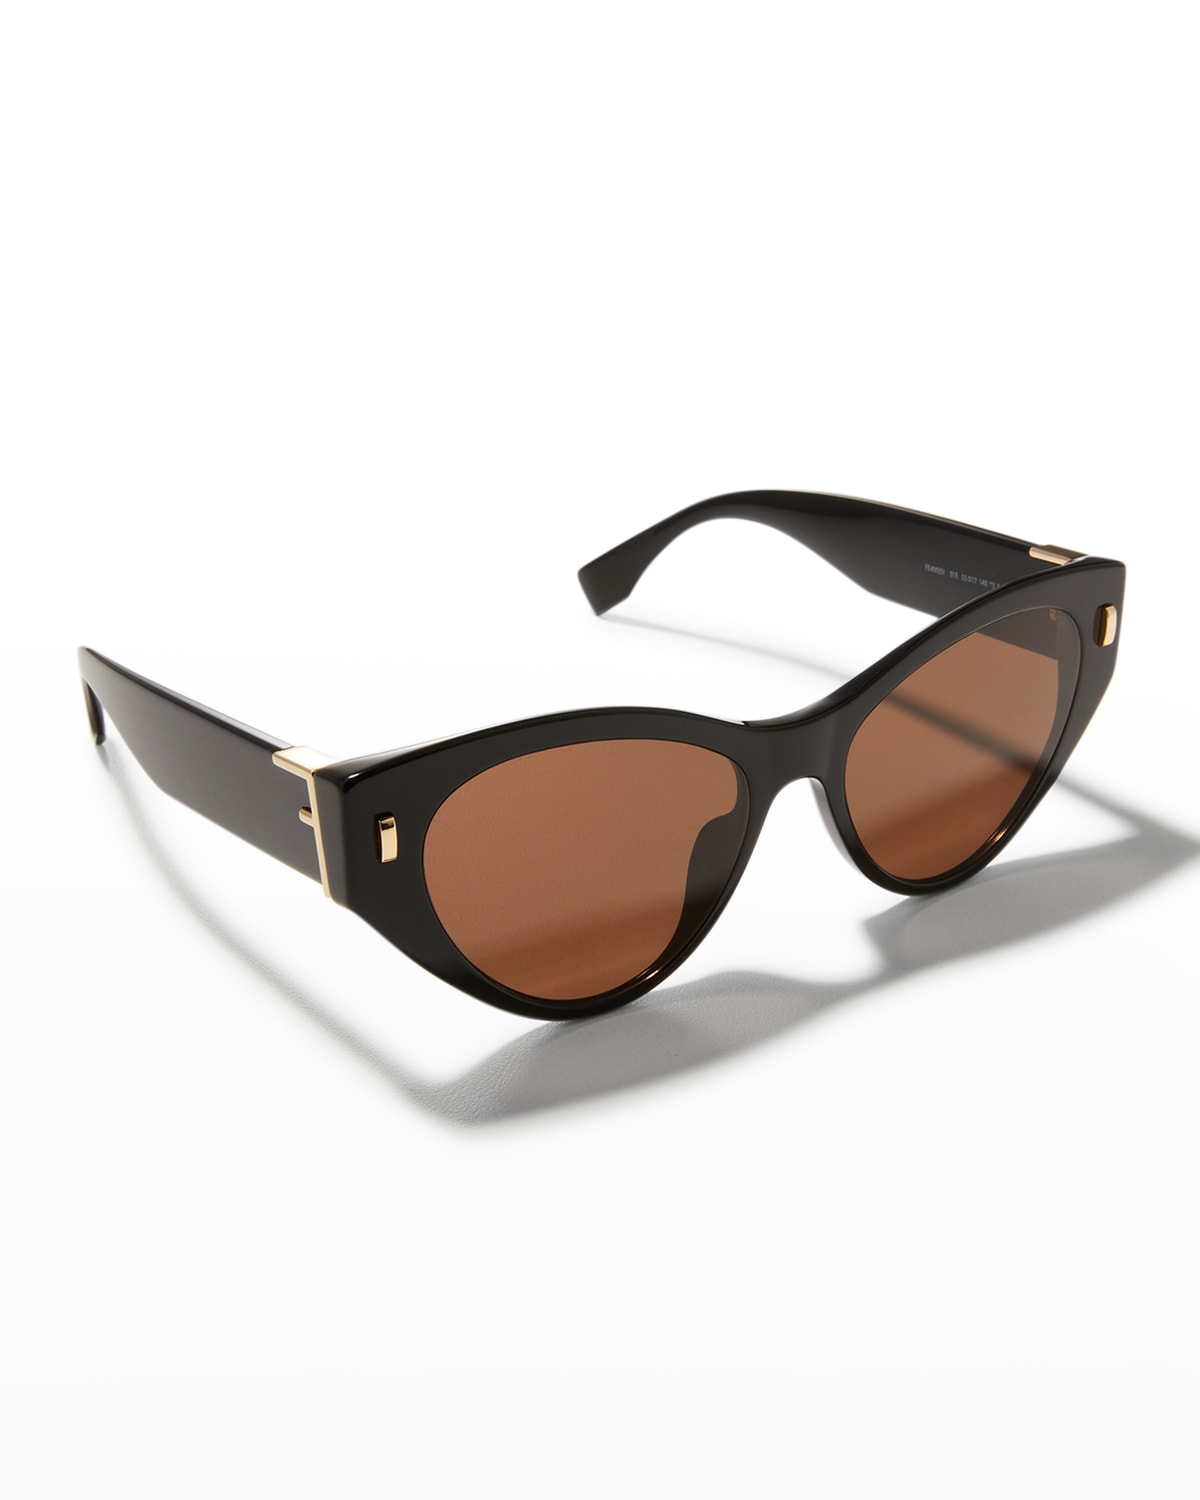 Brown FF-monogram cat-eye acetate sunglasses